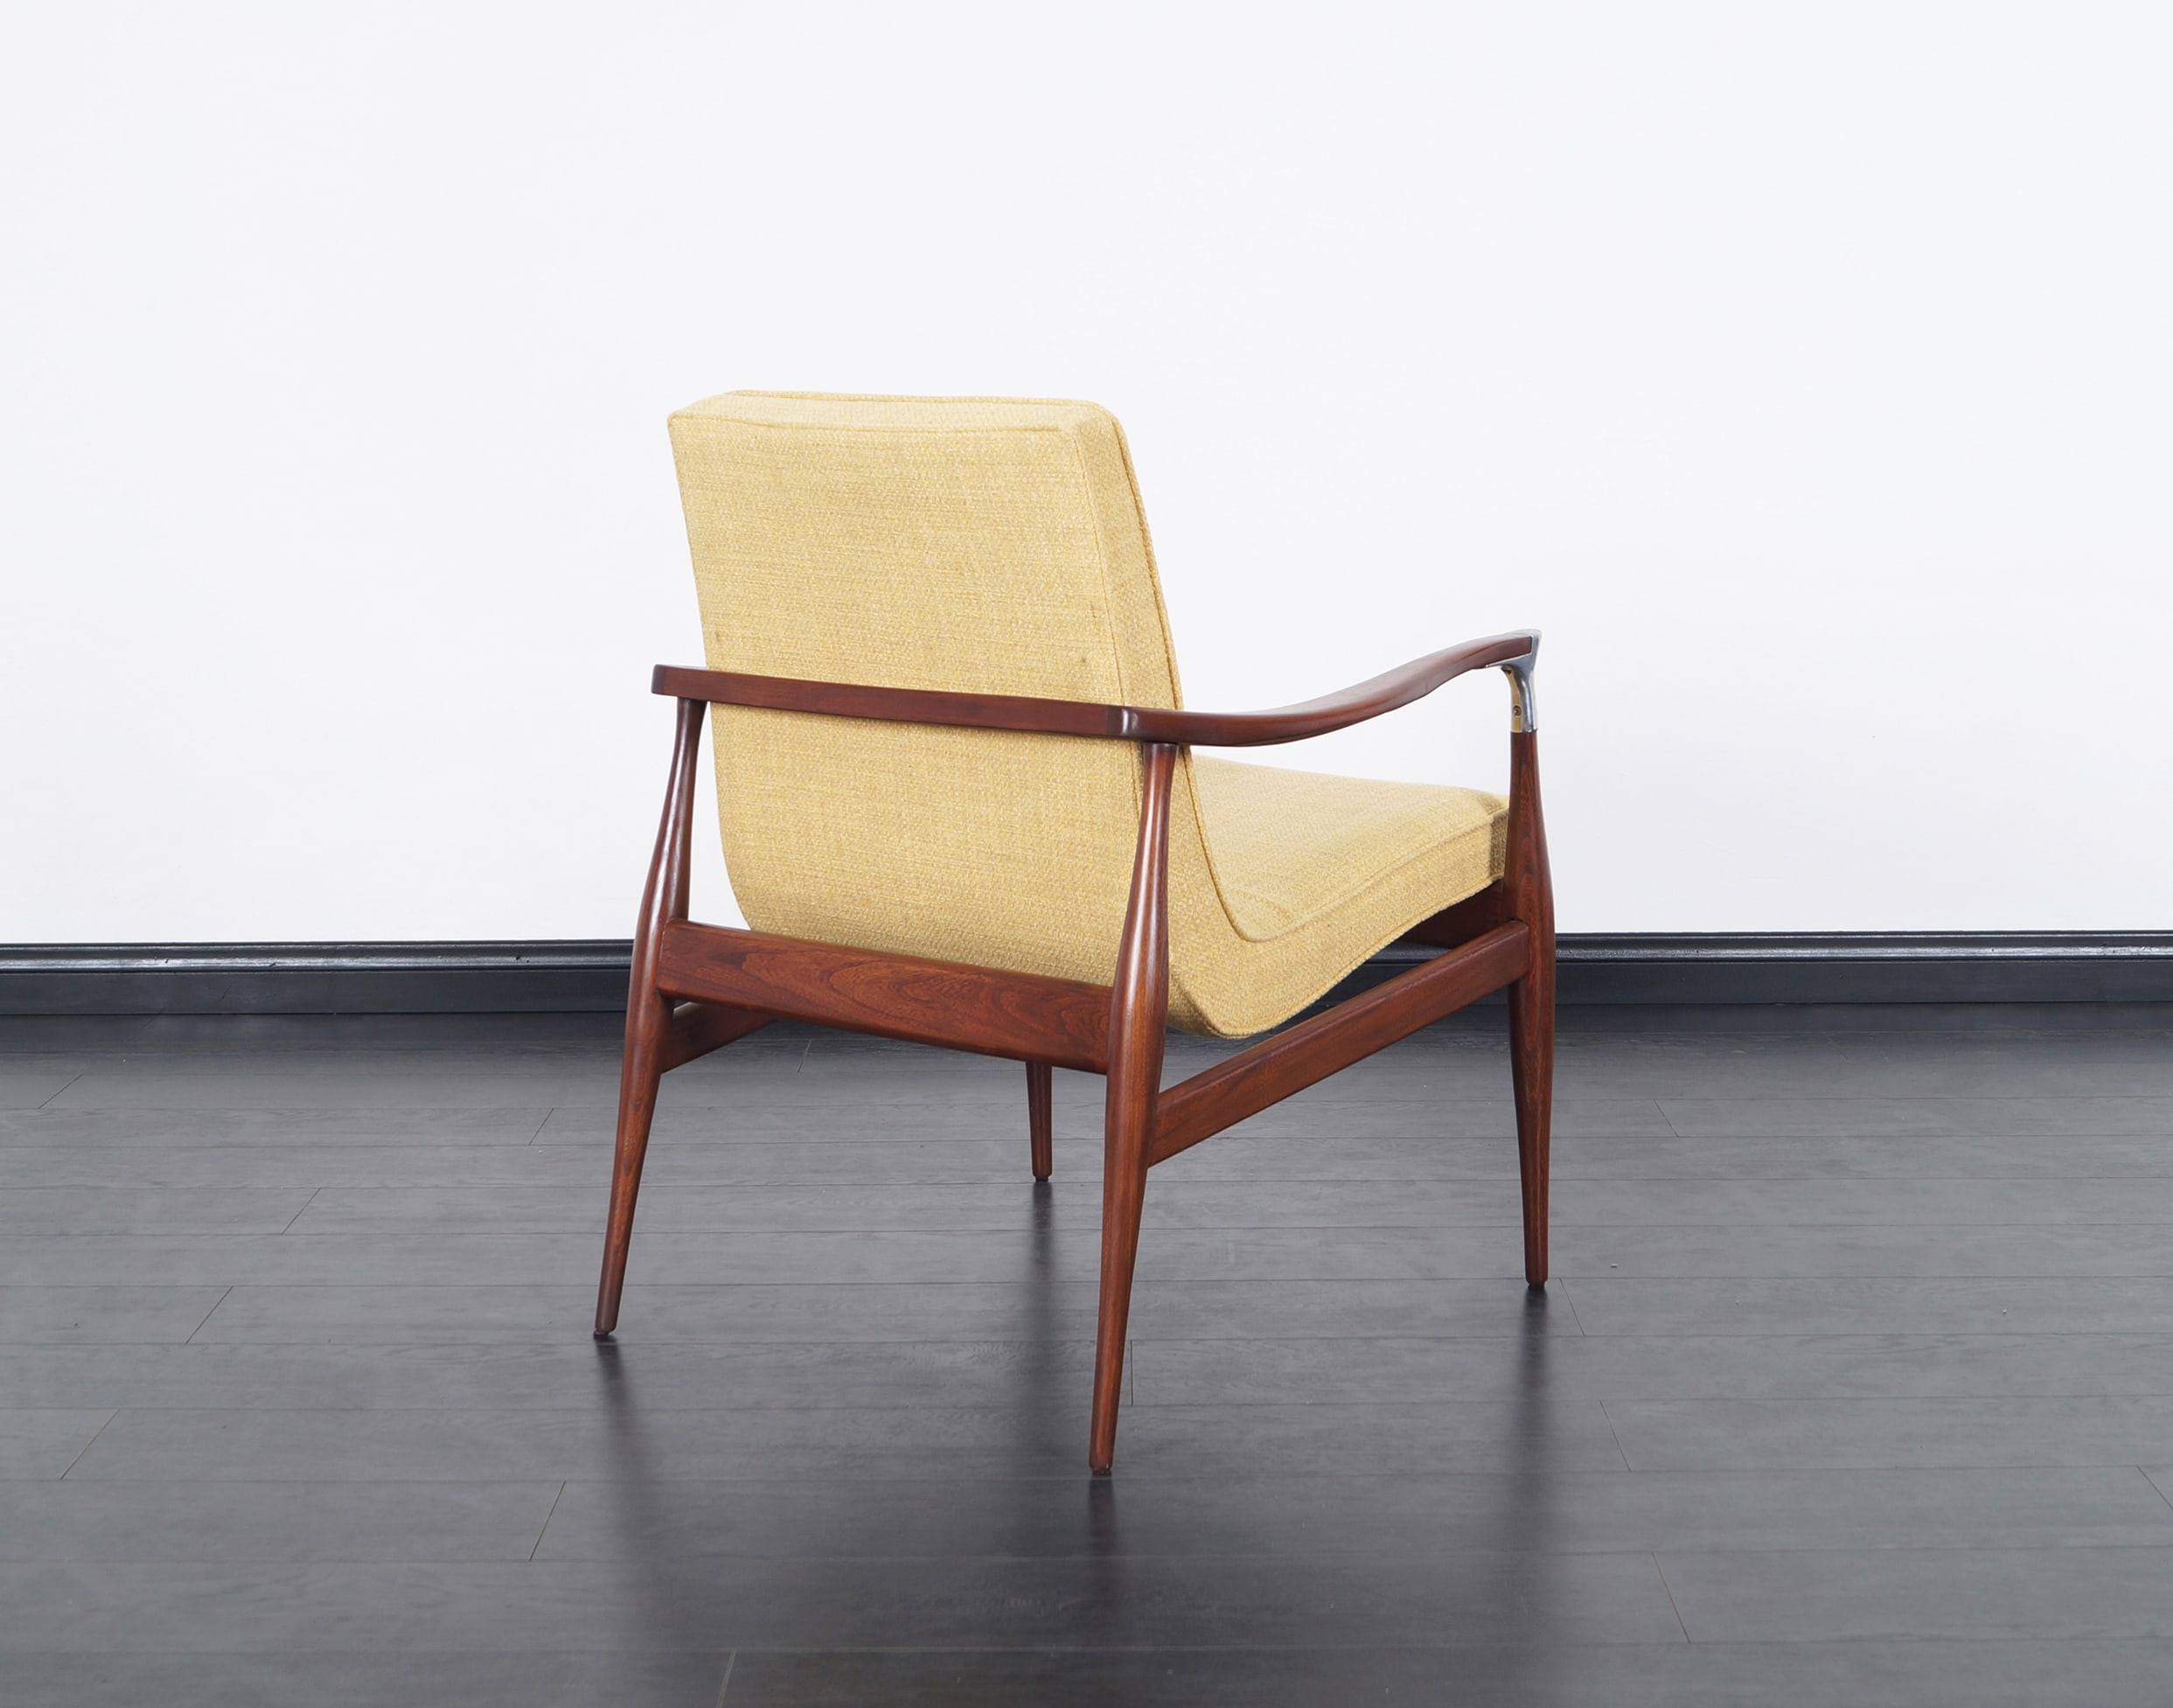 Danish Modern Chairs by Ib Kofod Larsen